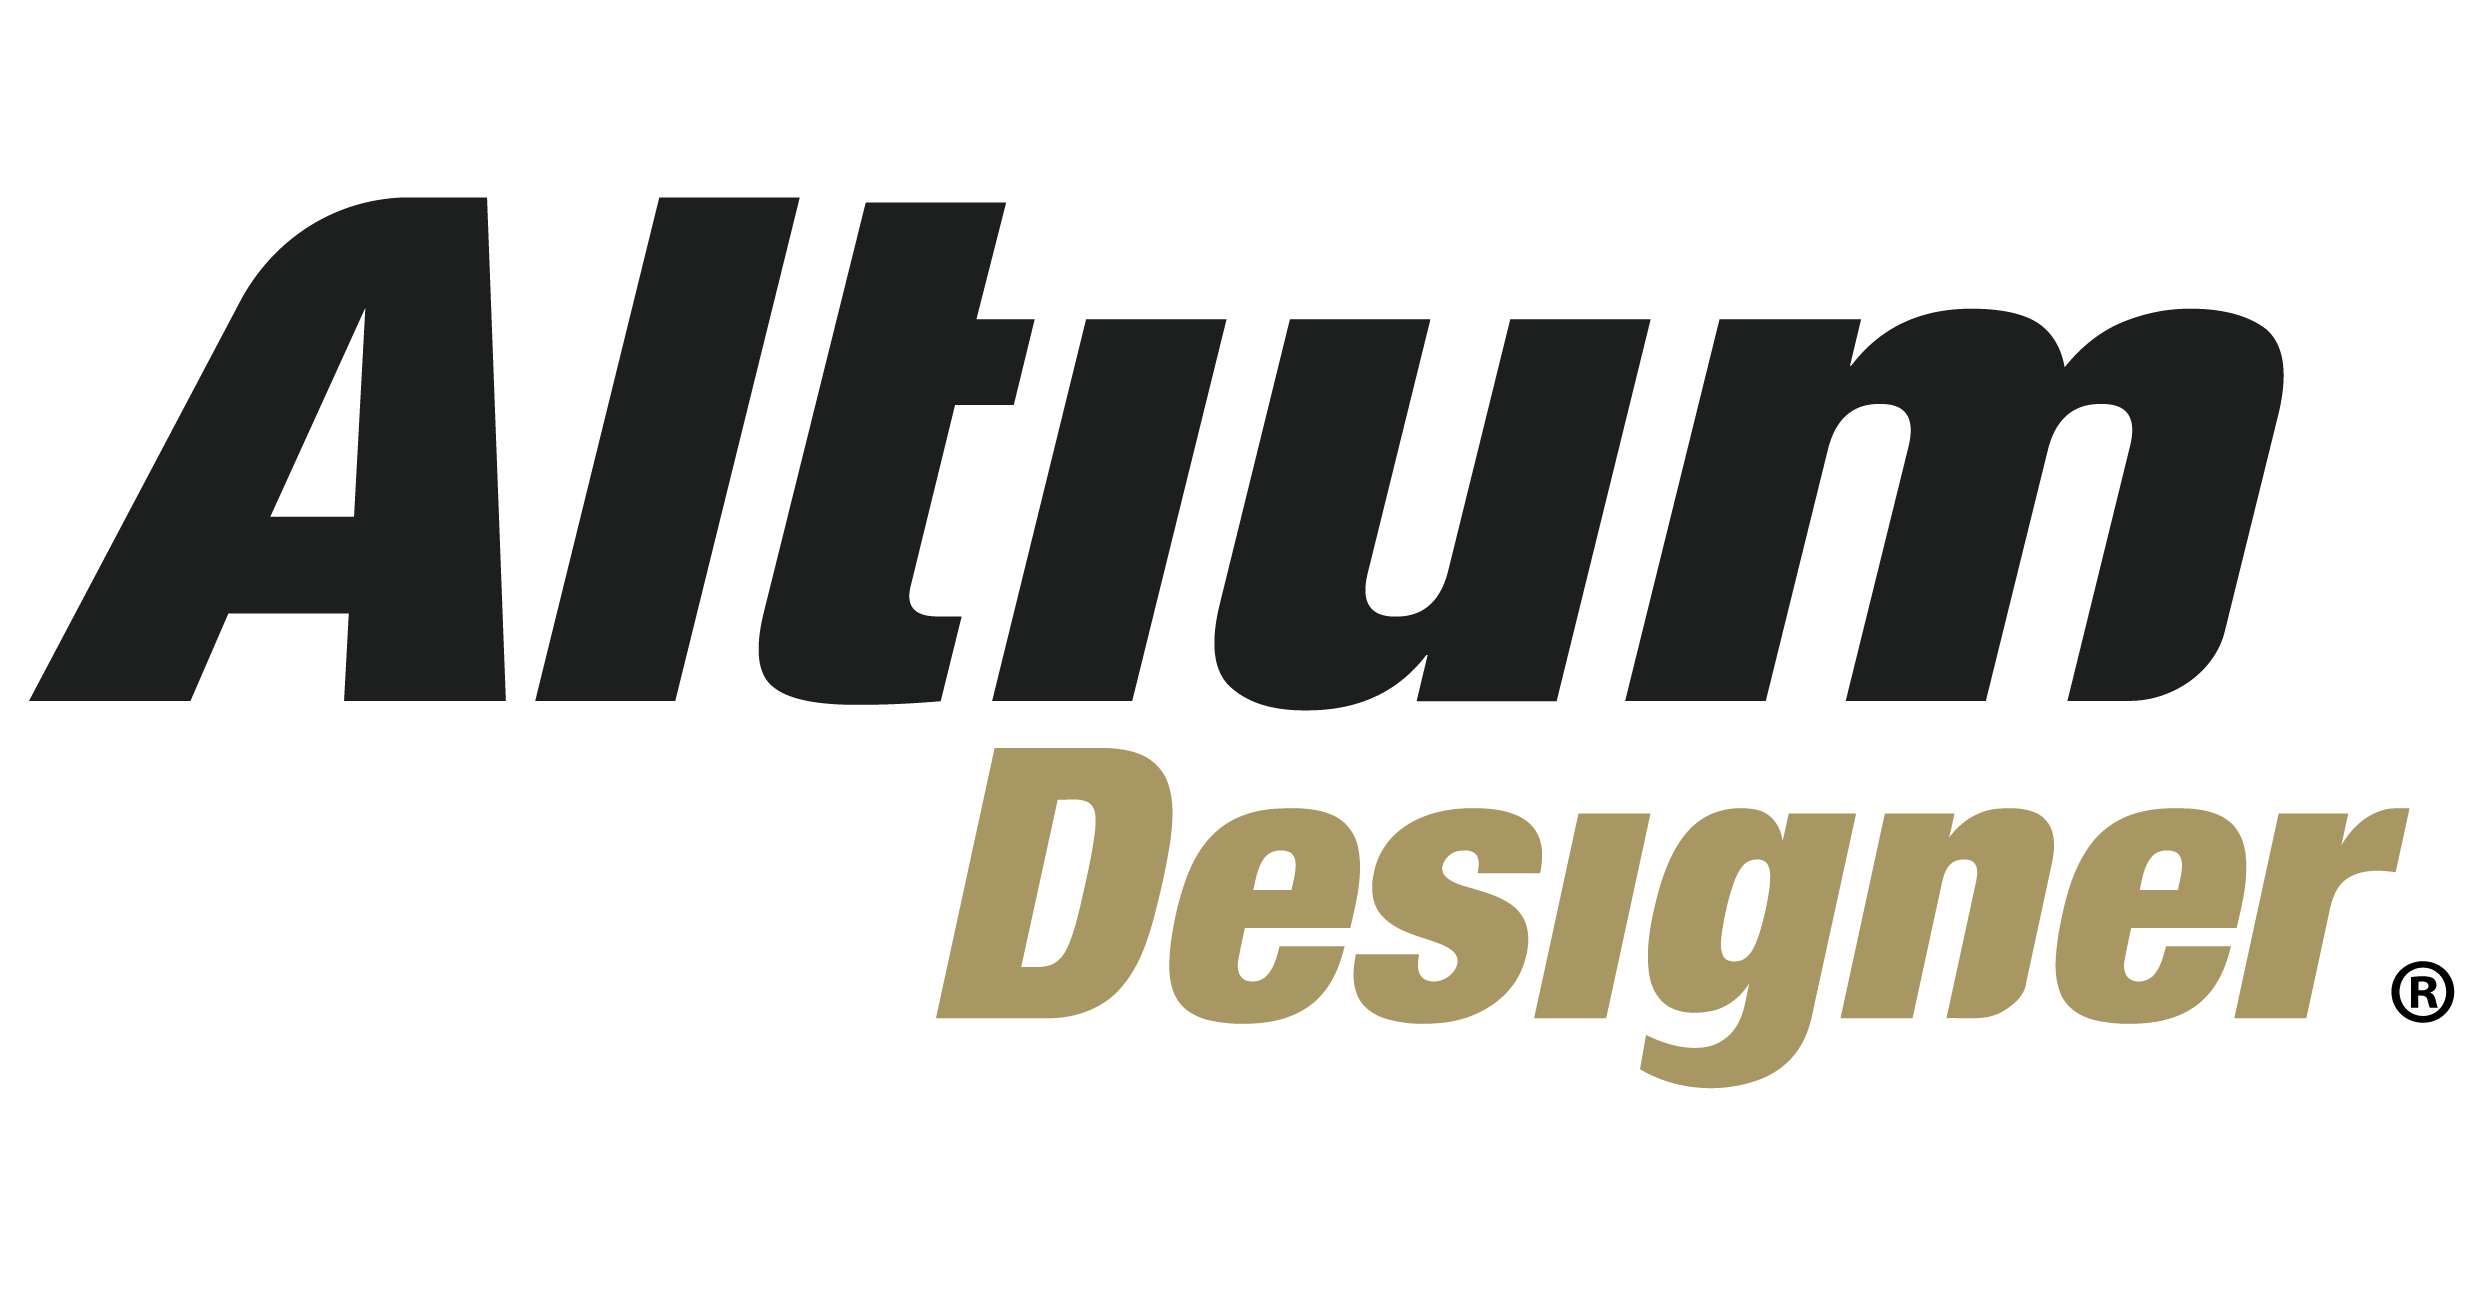 download the new for ios Altium Designer 23.7.1.13